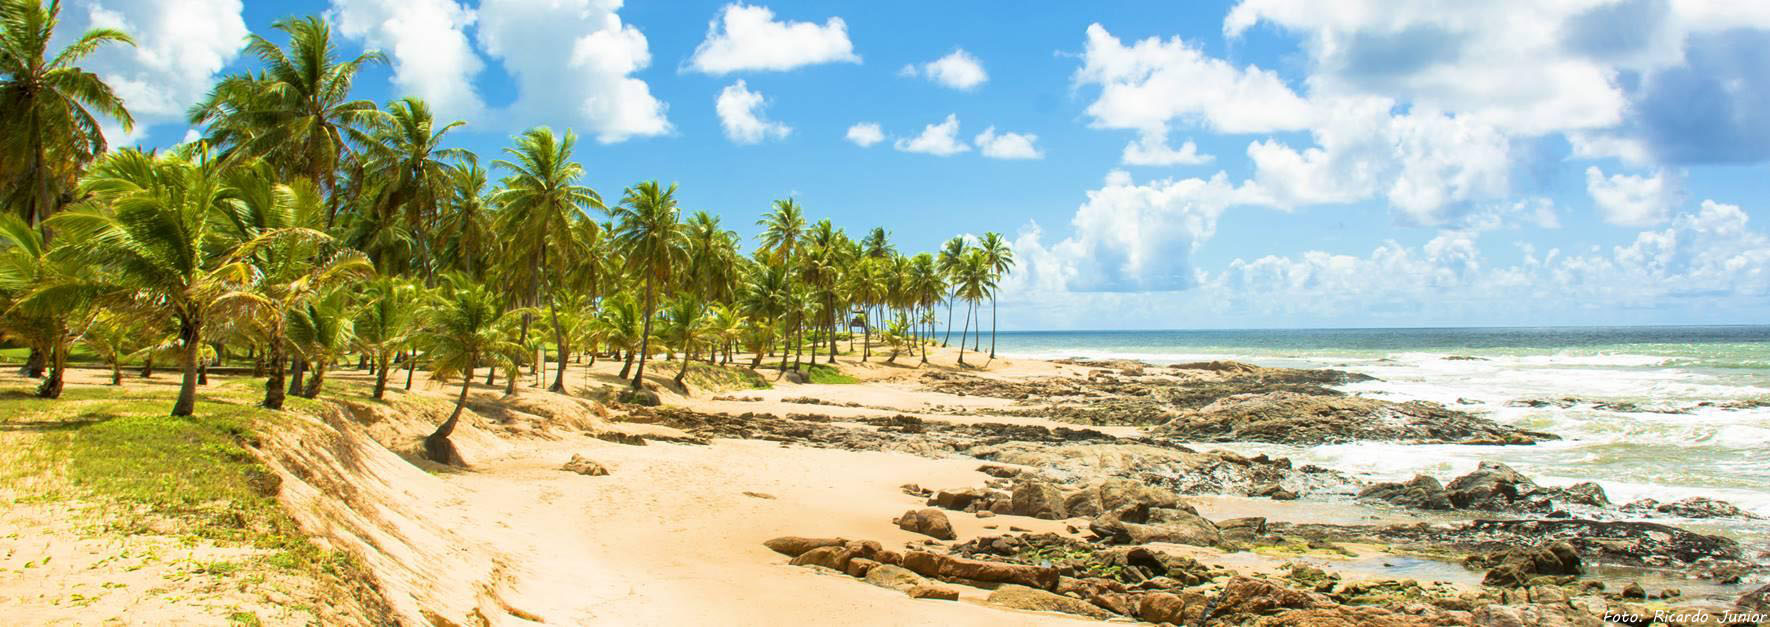 Costa do Sauípe para vivenciar experiências únicas